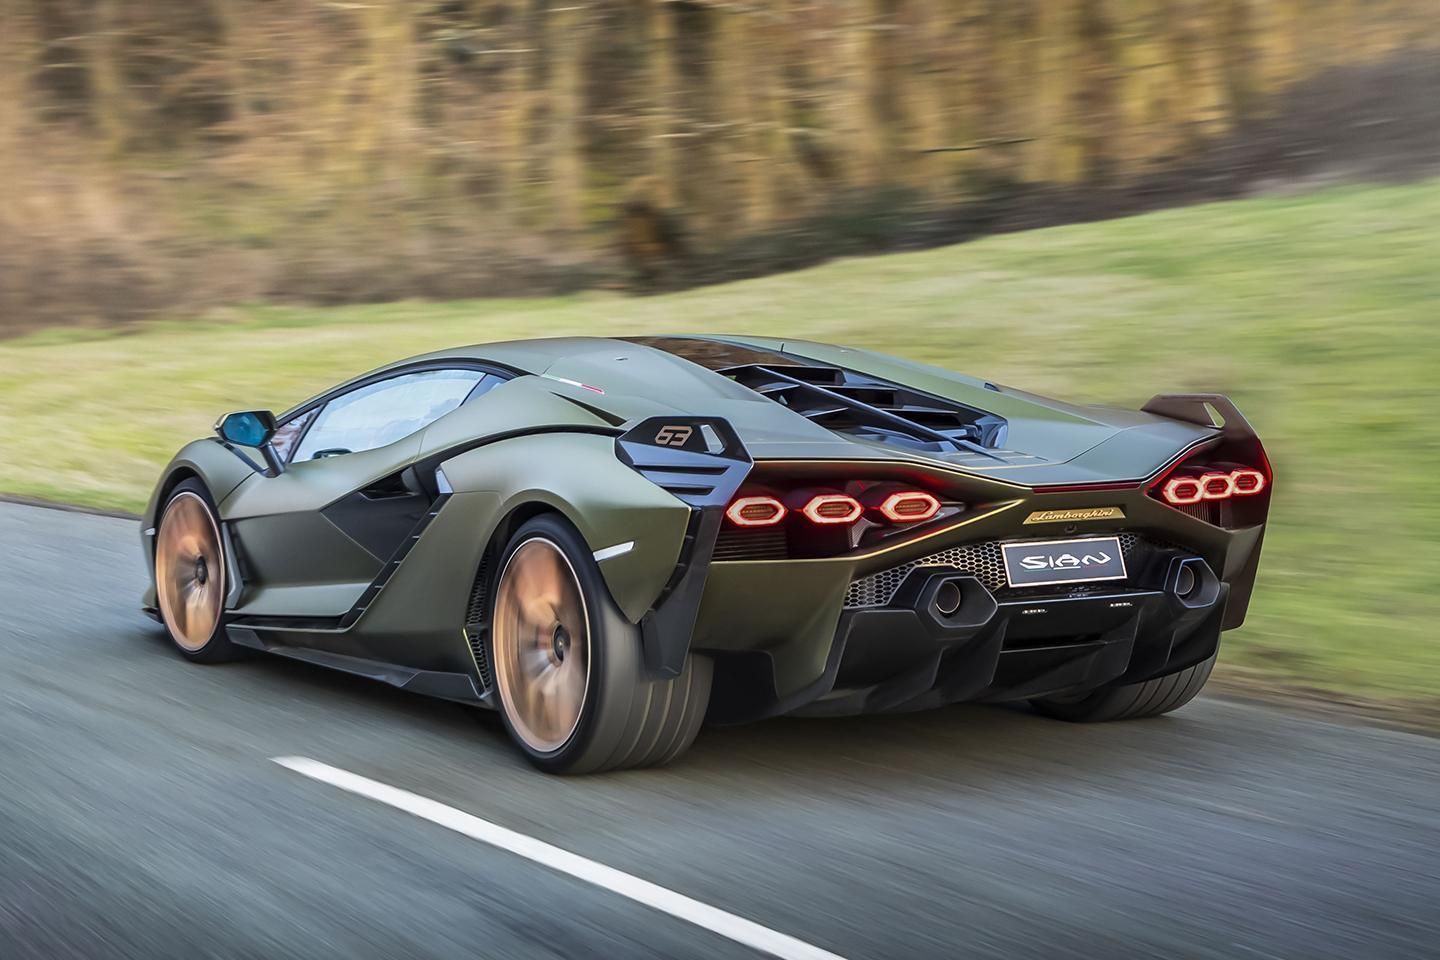 2021 Lamborghini Sian review